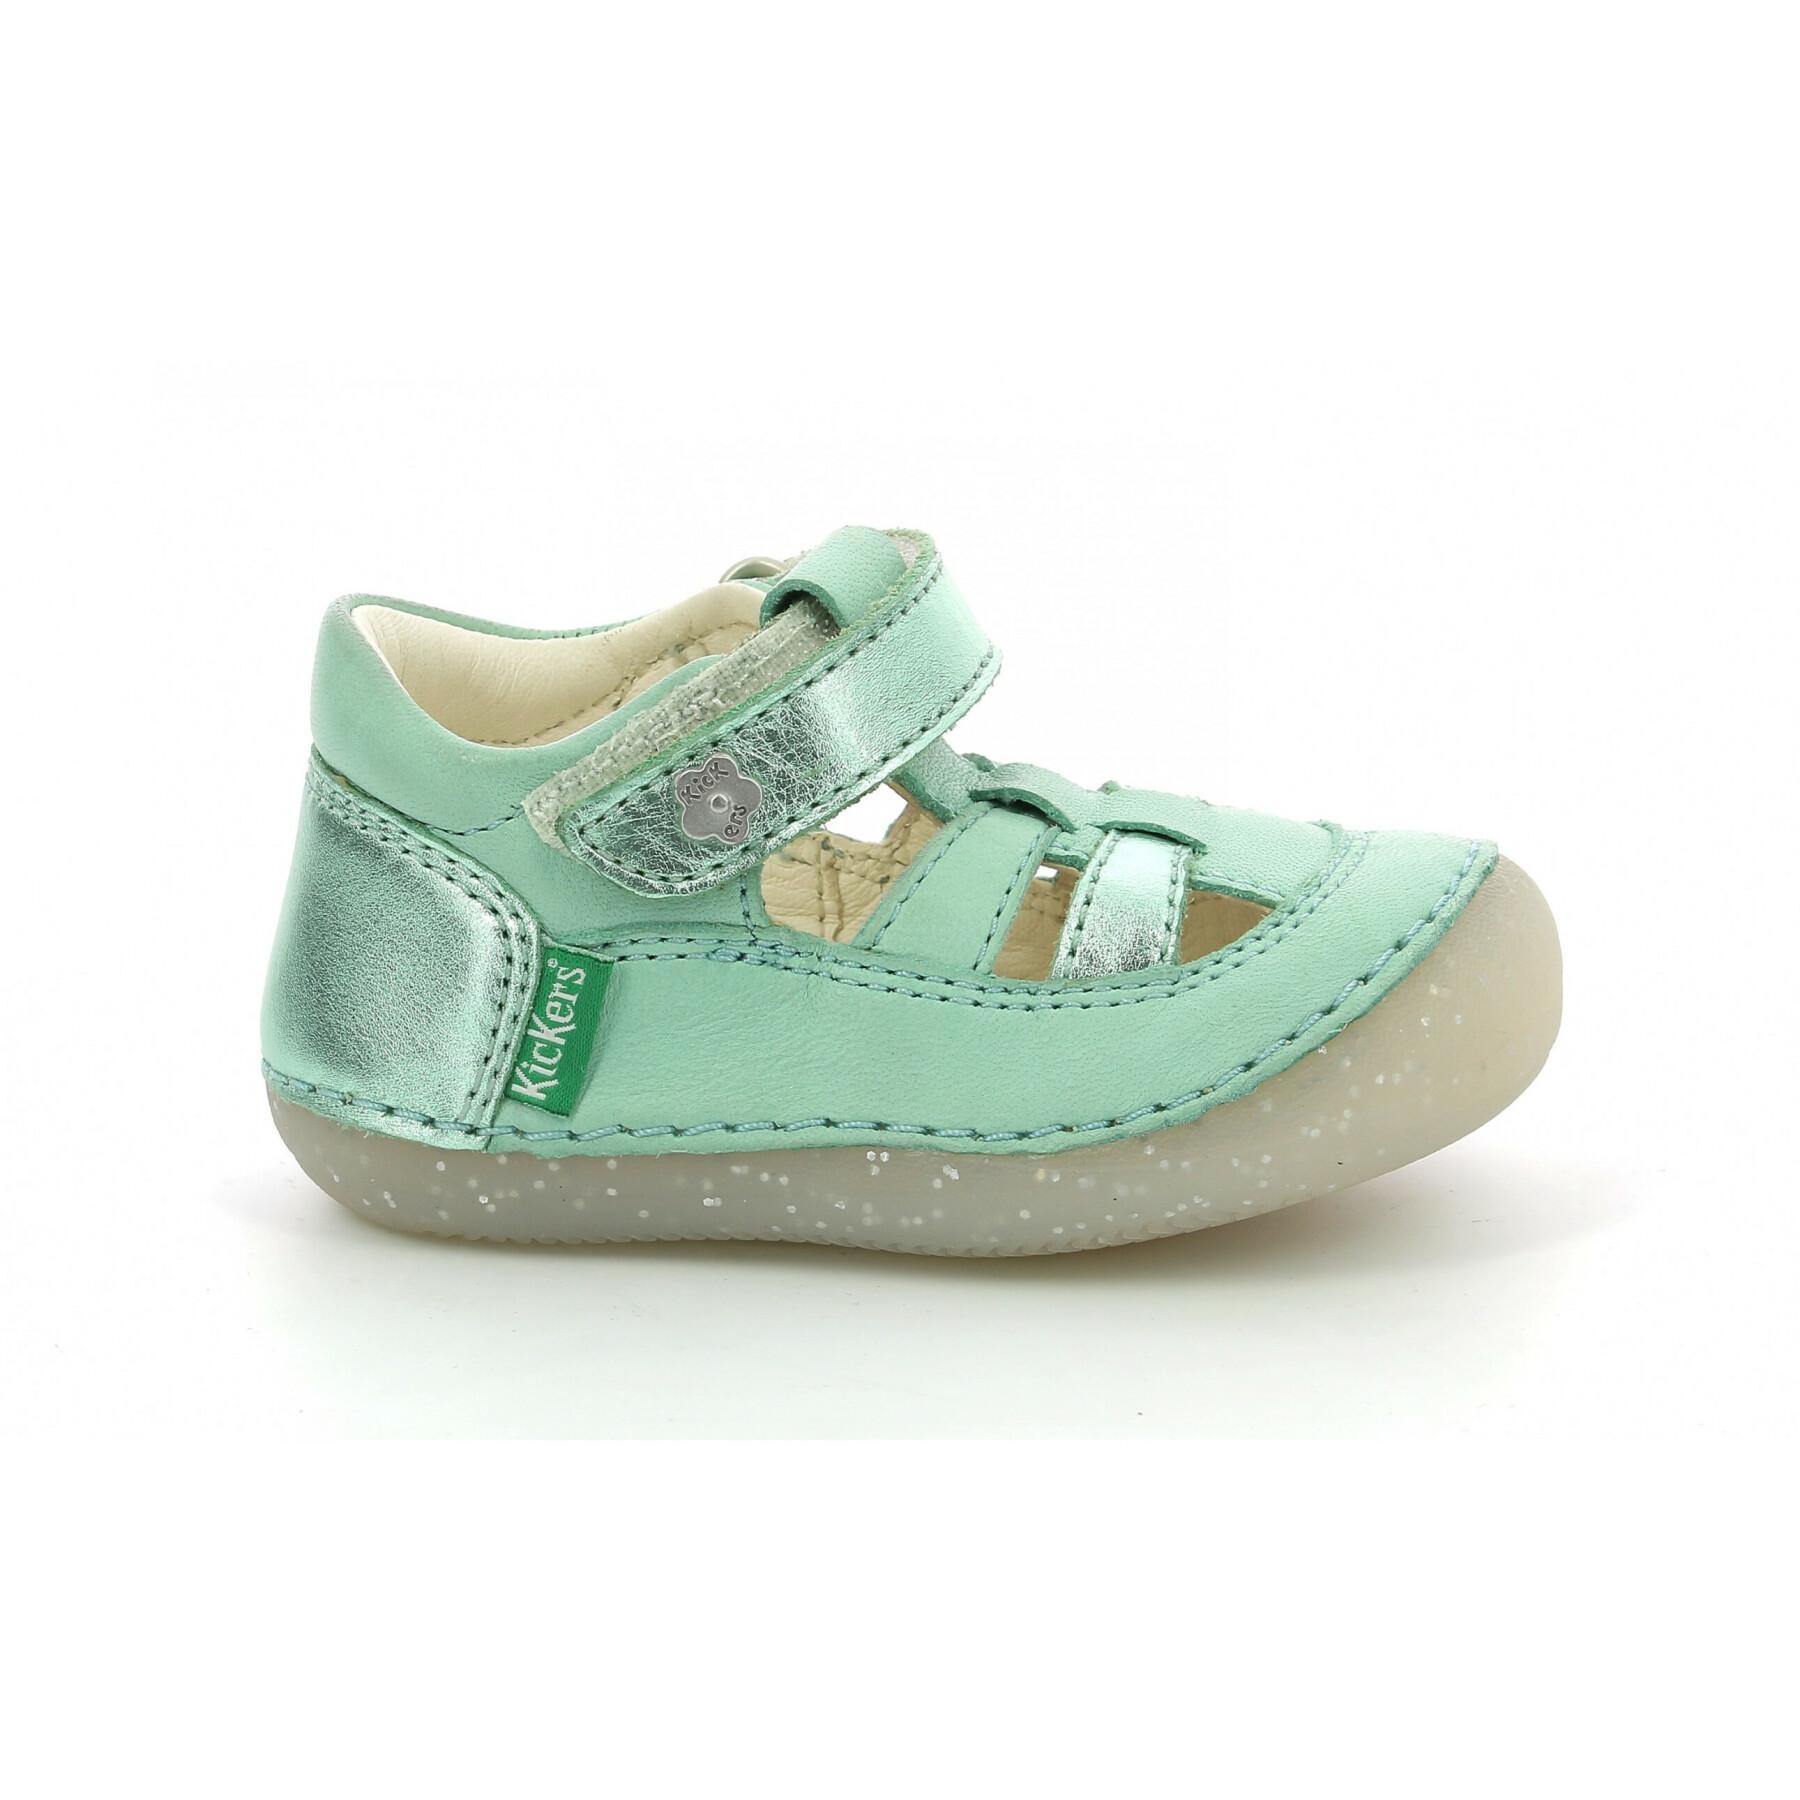 Baby girl sandals Kickers Sushy